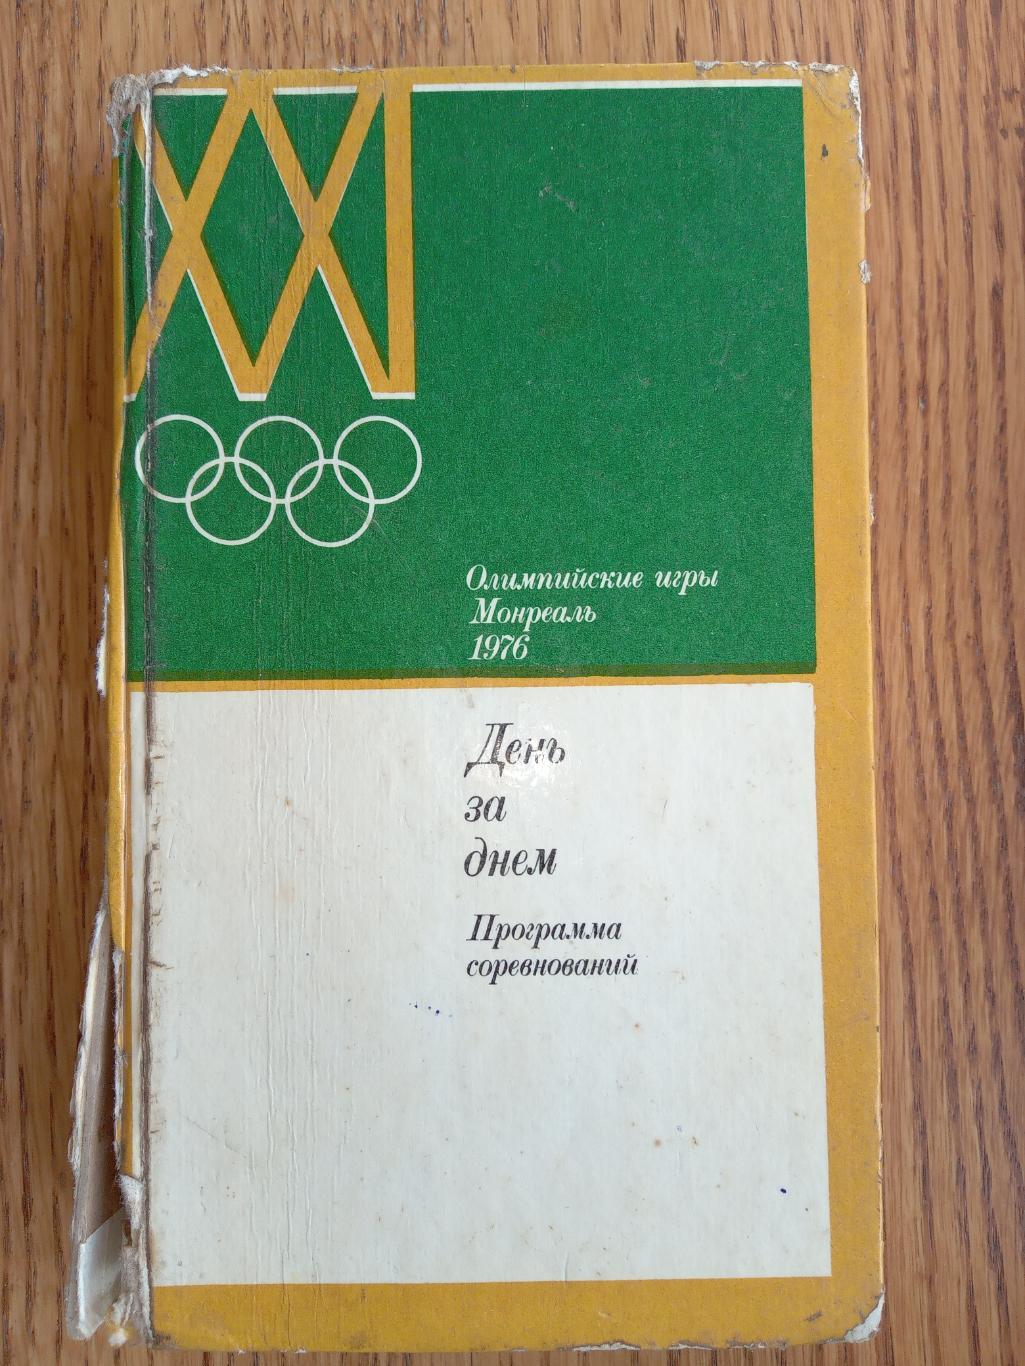 Книга.Довідник-програма. Олімпіада.1976. Монреаль.#.м.